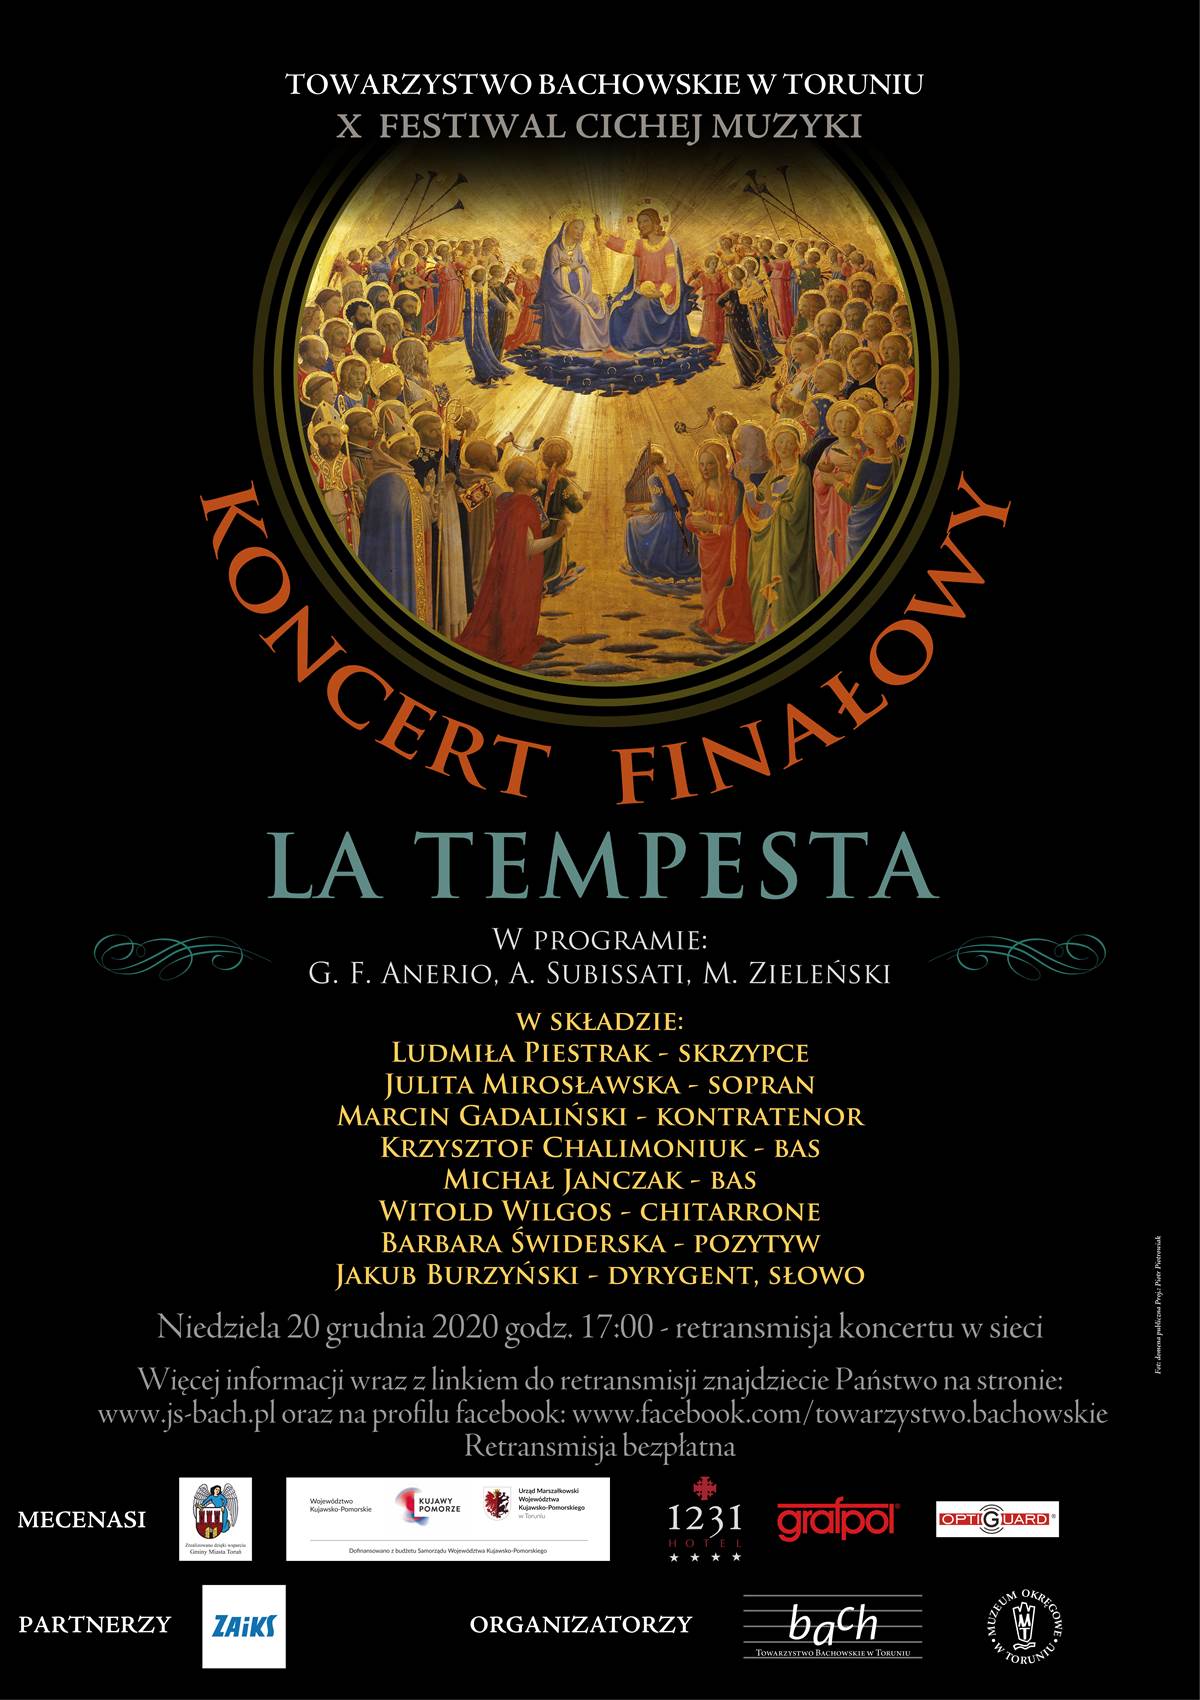 La Tempesta, finał X Festiwalu Cichej Muzyki. Materiały prasowe